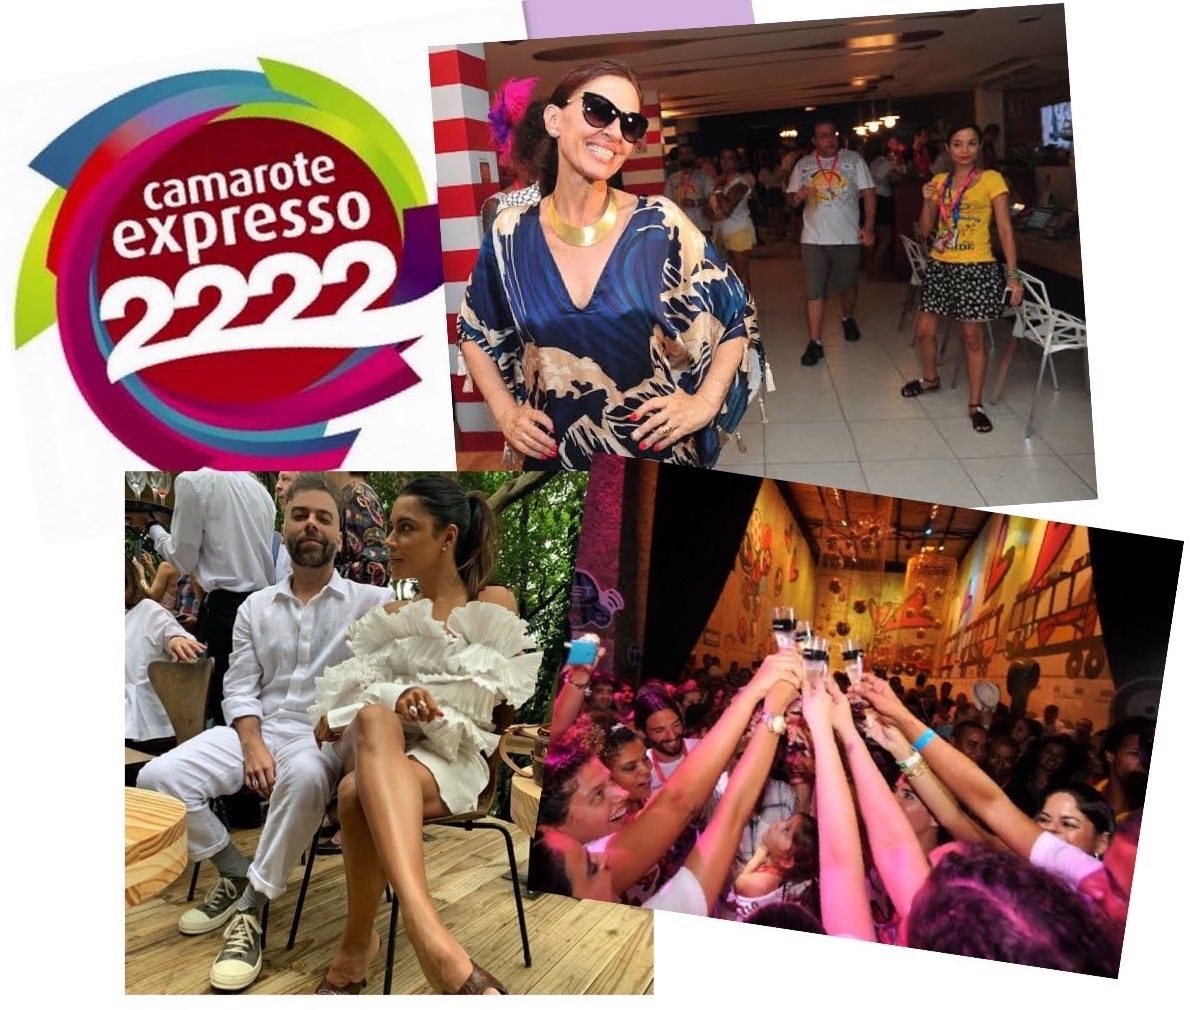 Exclusivo! Expresso 2222 confirma edição no Carnaval 2019